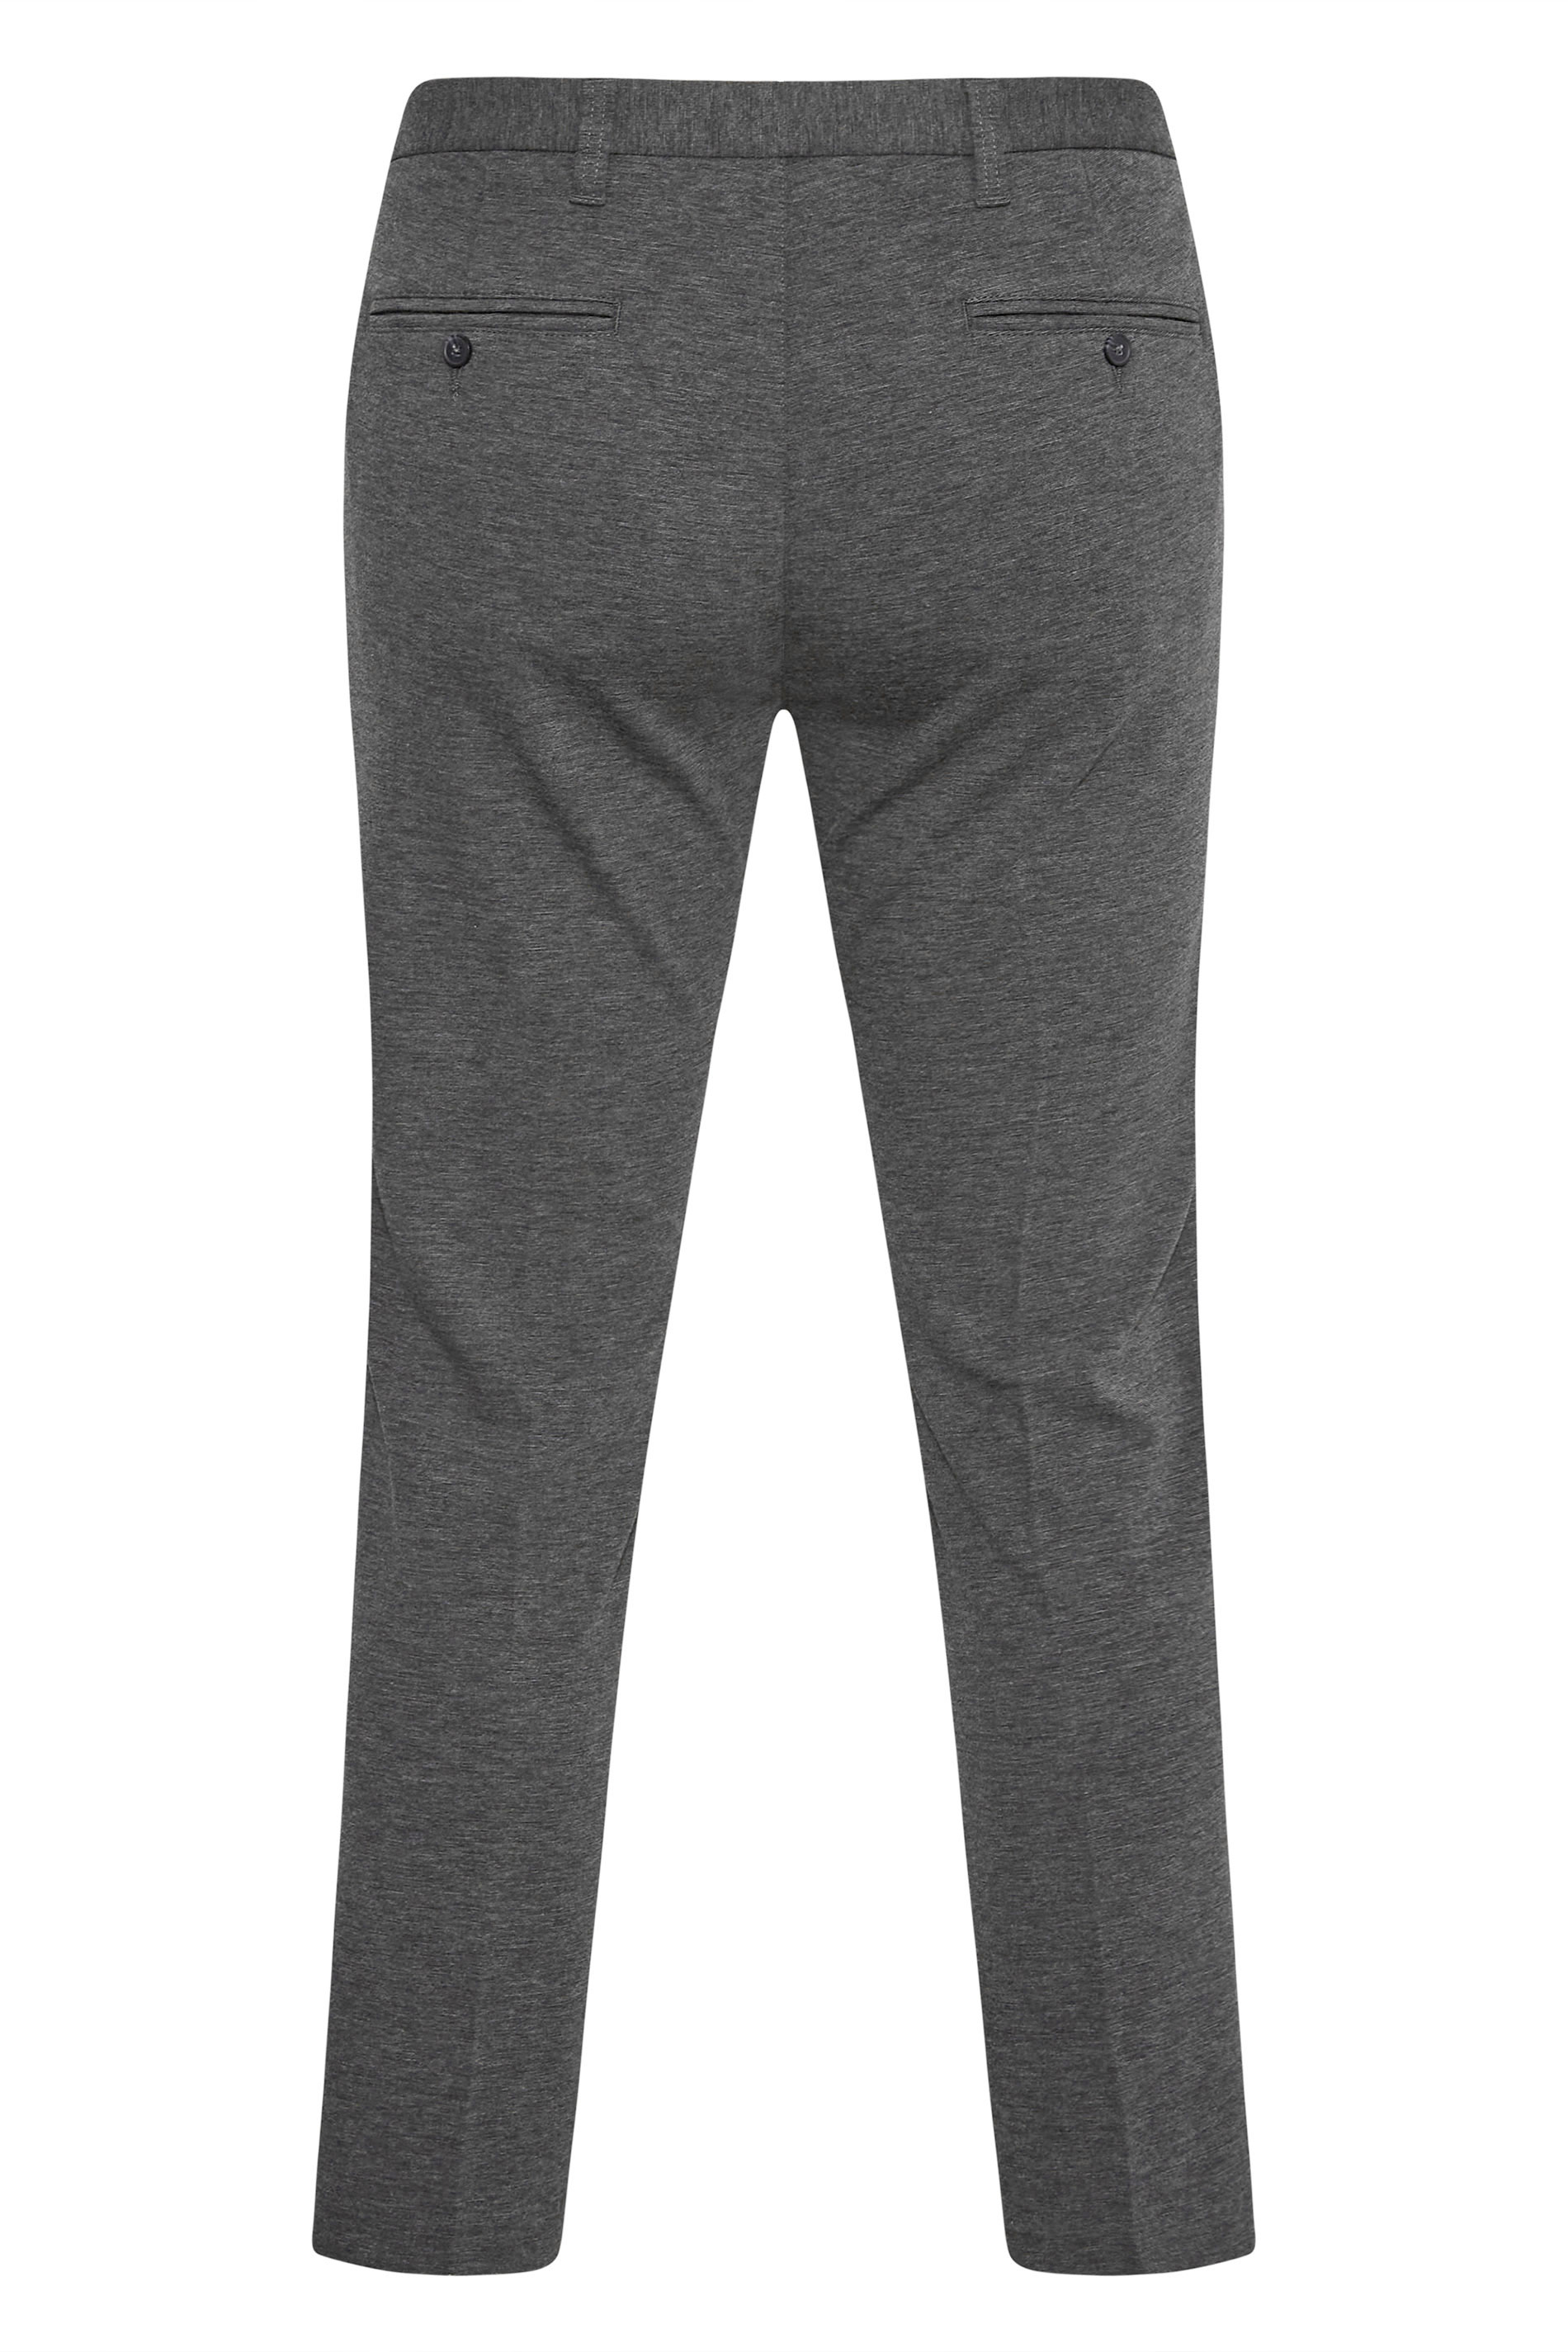 BadRhino Charcoal Grey Stretch Trousers | BadRhino 3